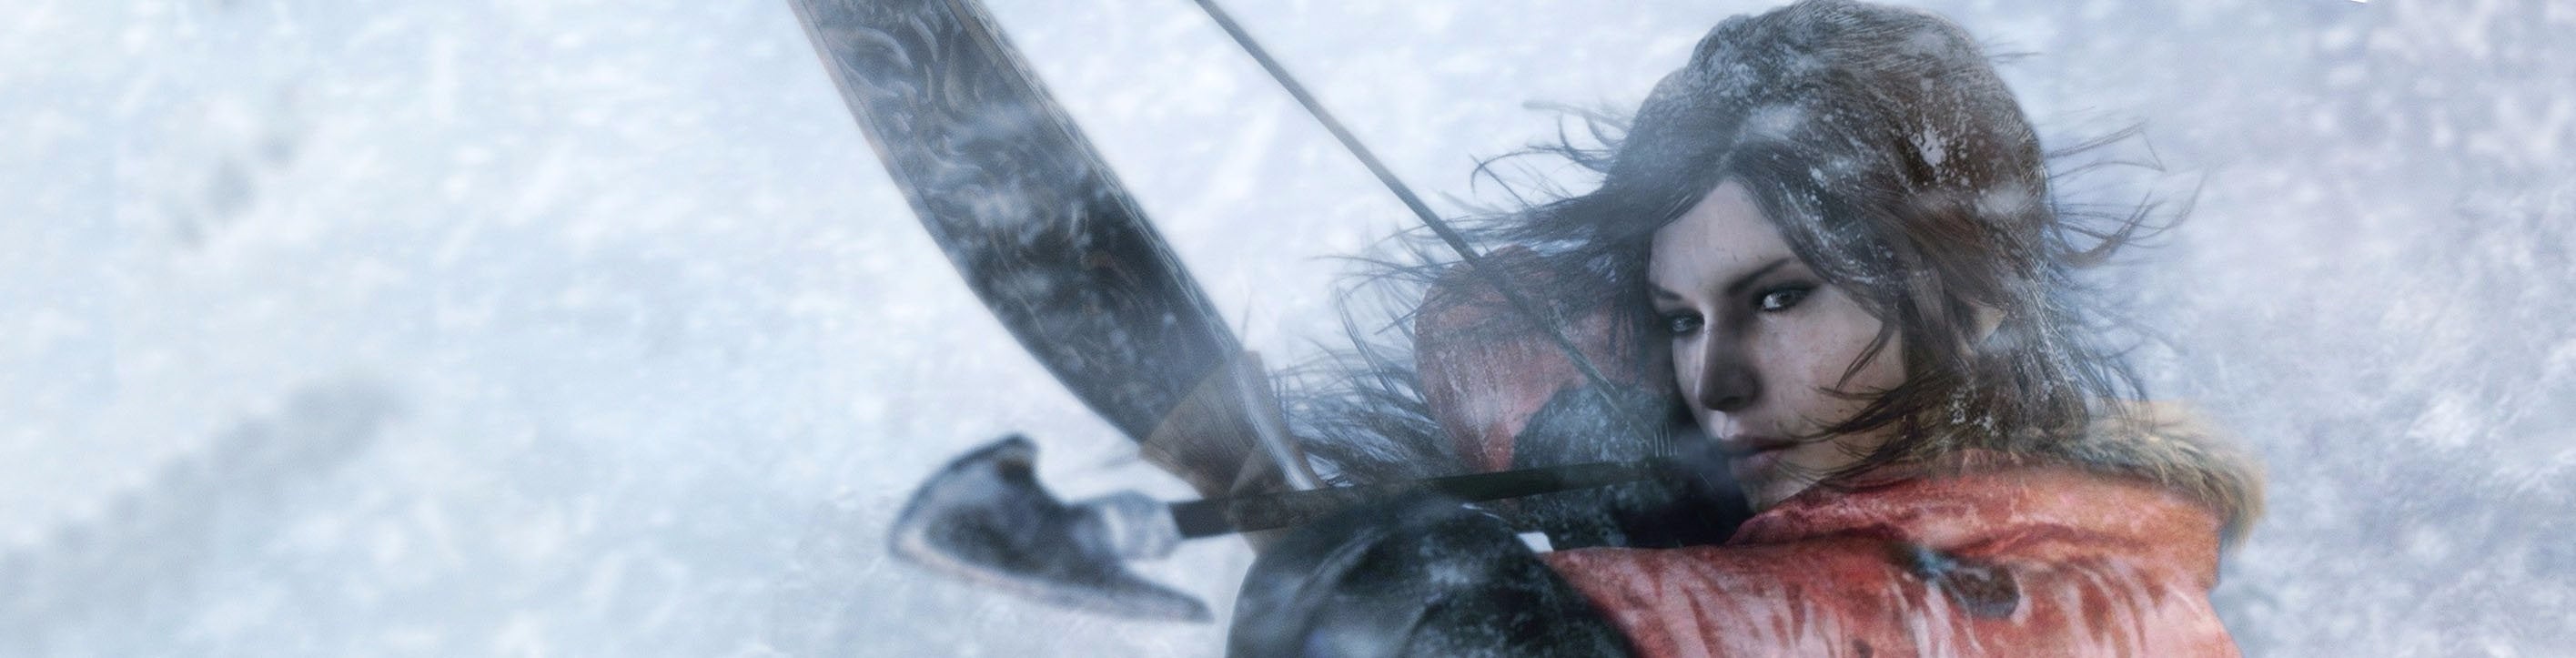 Imagen para Rise of the Tomb Raider, ¿mejor en PlayStation 4 que en Xbox One?